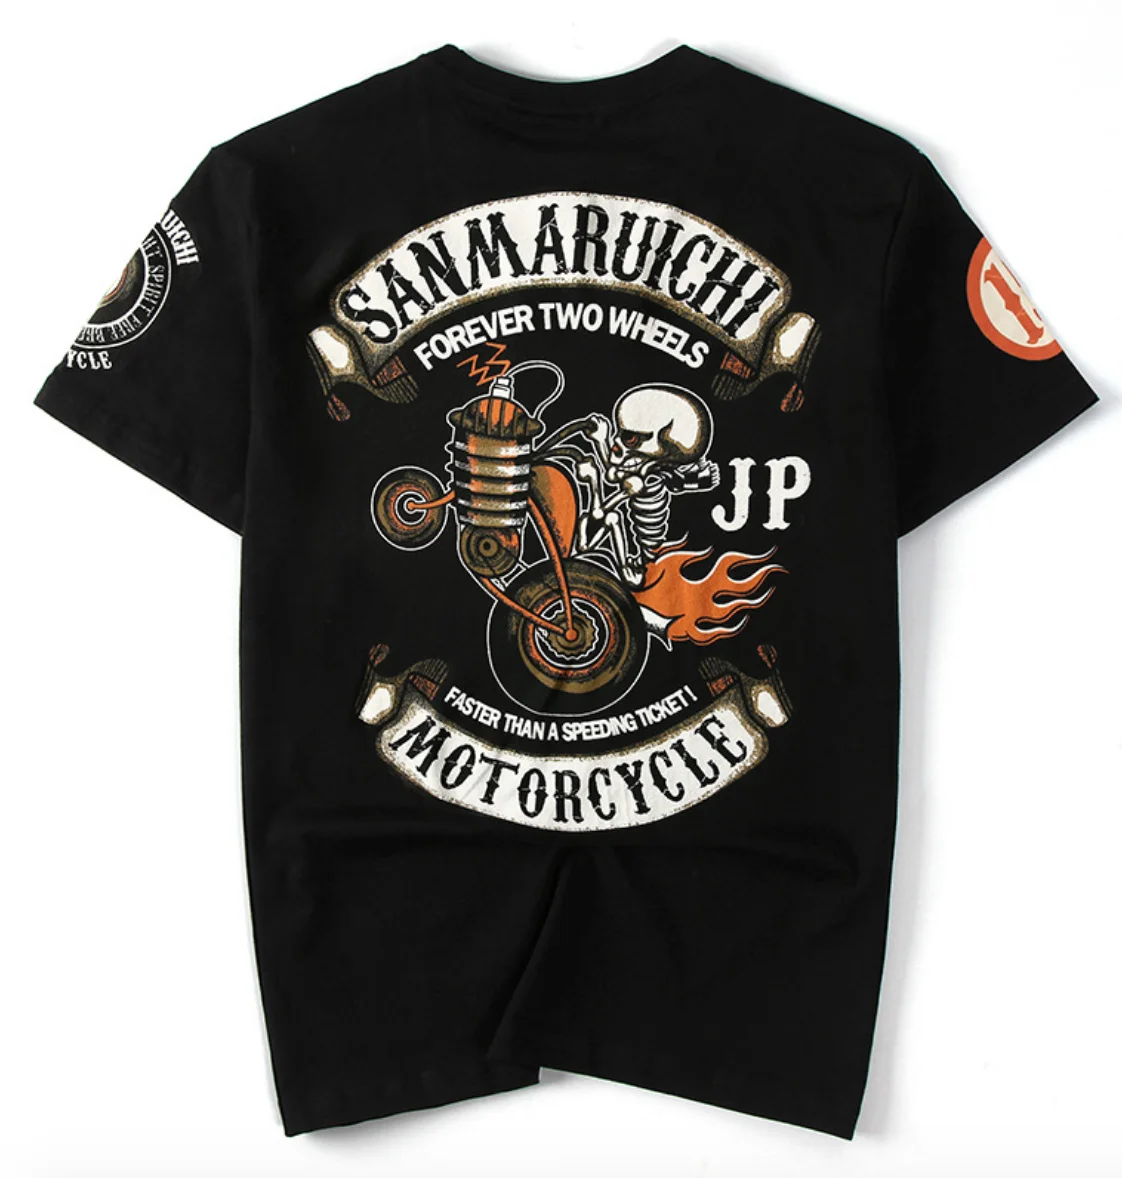 Для мужчин мотоциклы лето Ретро панк футболка футболки Топы Круглый вырез с длинным рукавом Sanaruichi